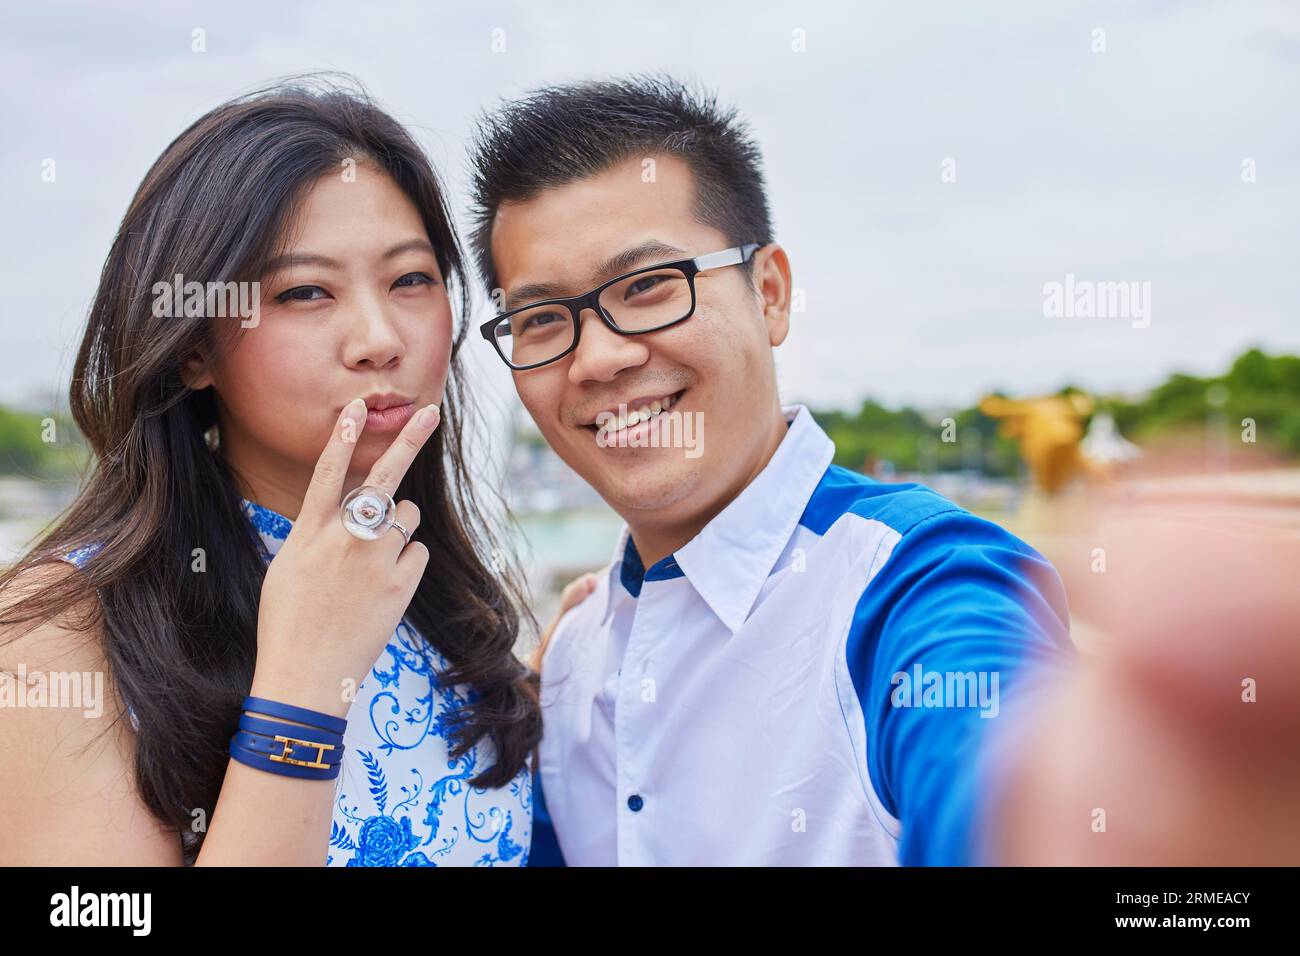 Beau couple asiatique de touristes passant leurs vacances à Paris et prenant selfie avec un téléphone portable, fille montre un signe V, un geste populaire Banque D'Images